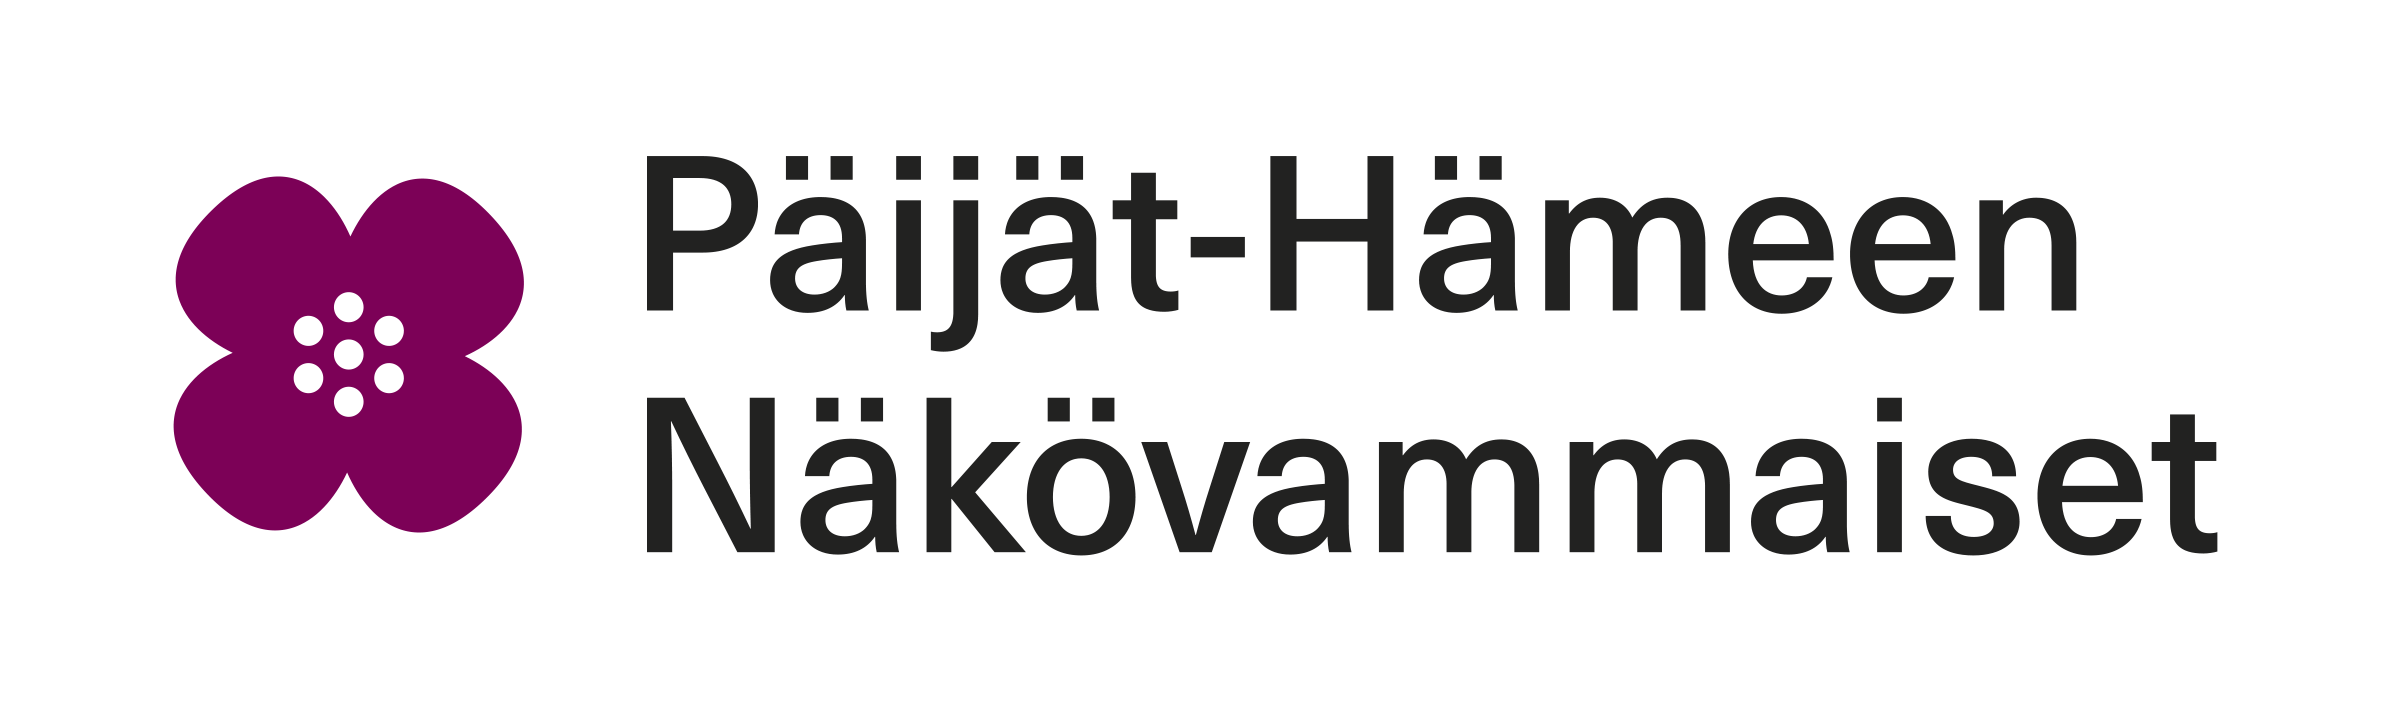 Föreningen Päijät-Hämeen Näkövammaisets logo.